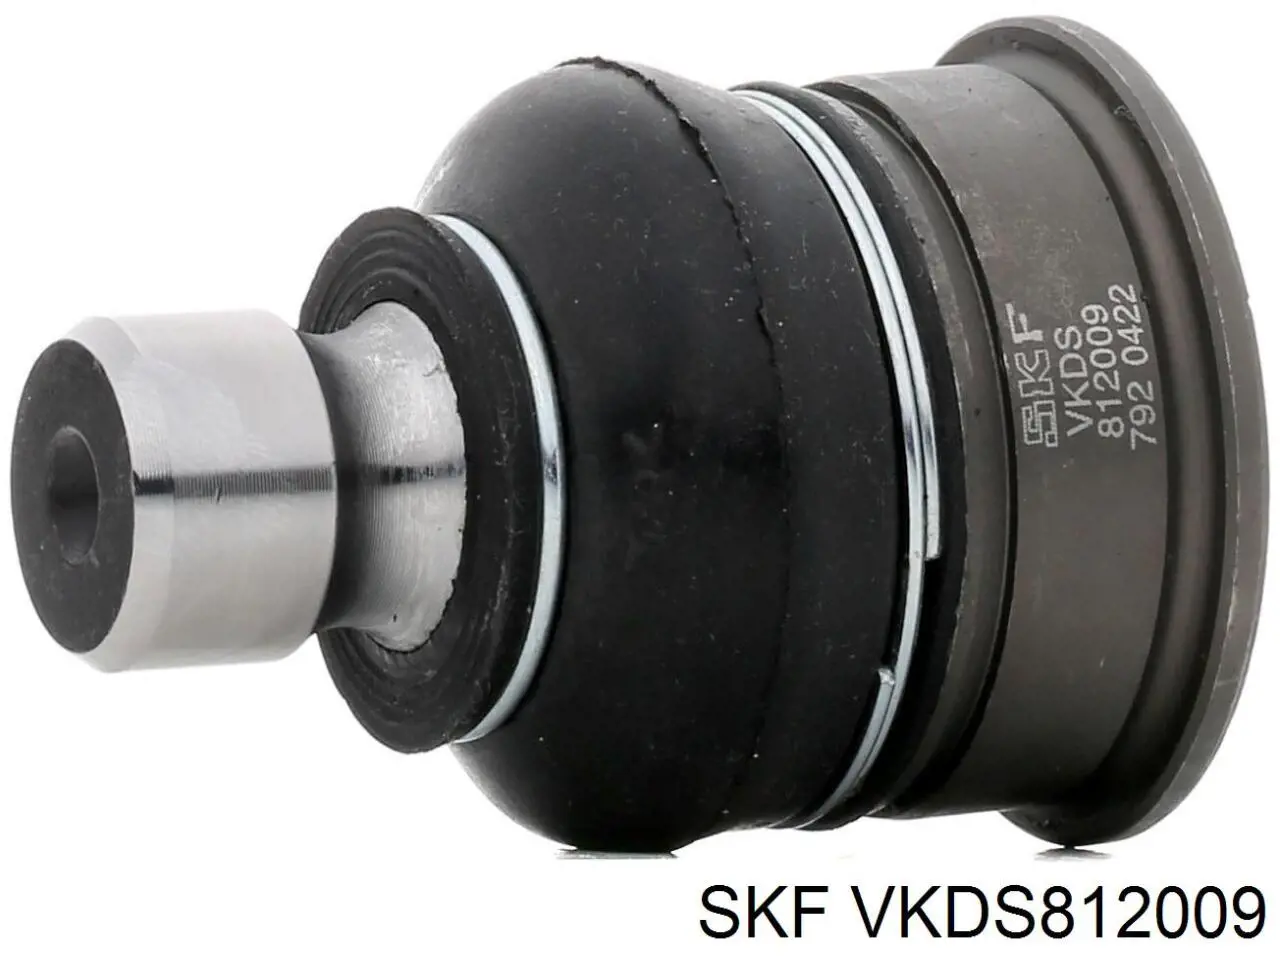 VKDS 812009 SKF rótula de suspensión inferior